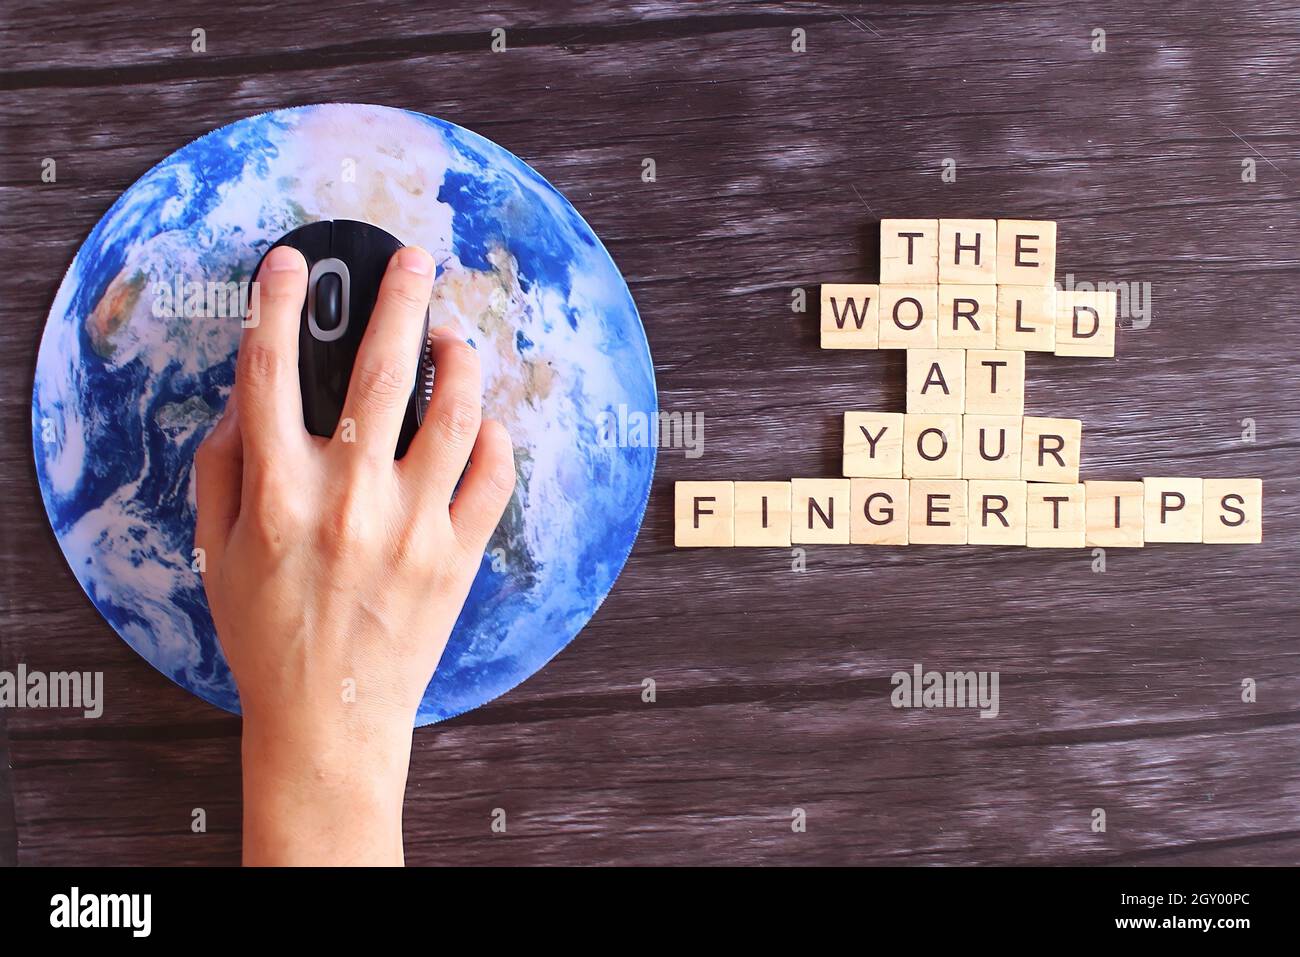 Cliquez à la main la souris d'ordinateur sur la planète Terre globe et cube en bois avec le texte LE MONDE À VOTRE BOUT DES DOIGTS. Banque D'Images